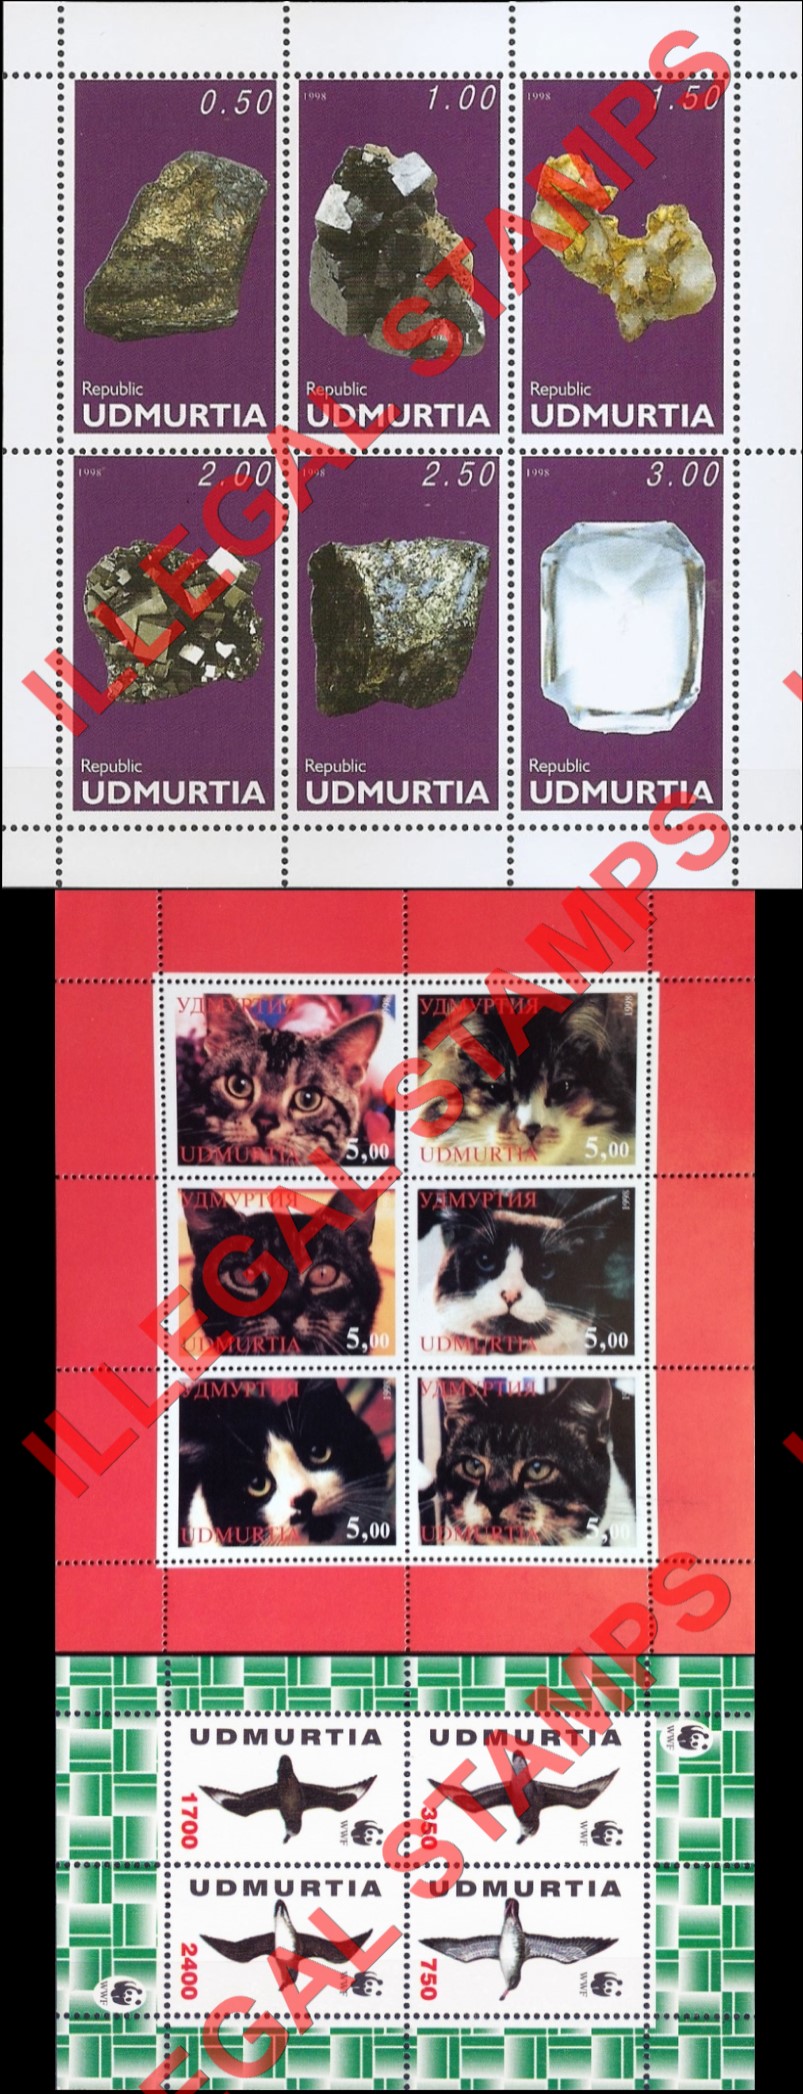 Republic of Udmurtia 1998 Counterfeit Illegal Stamps (Part 3)